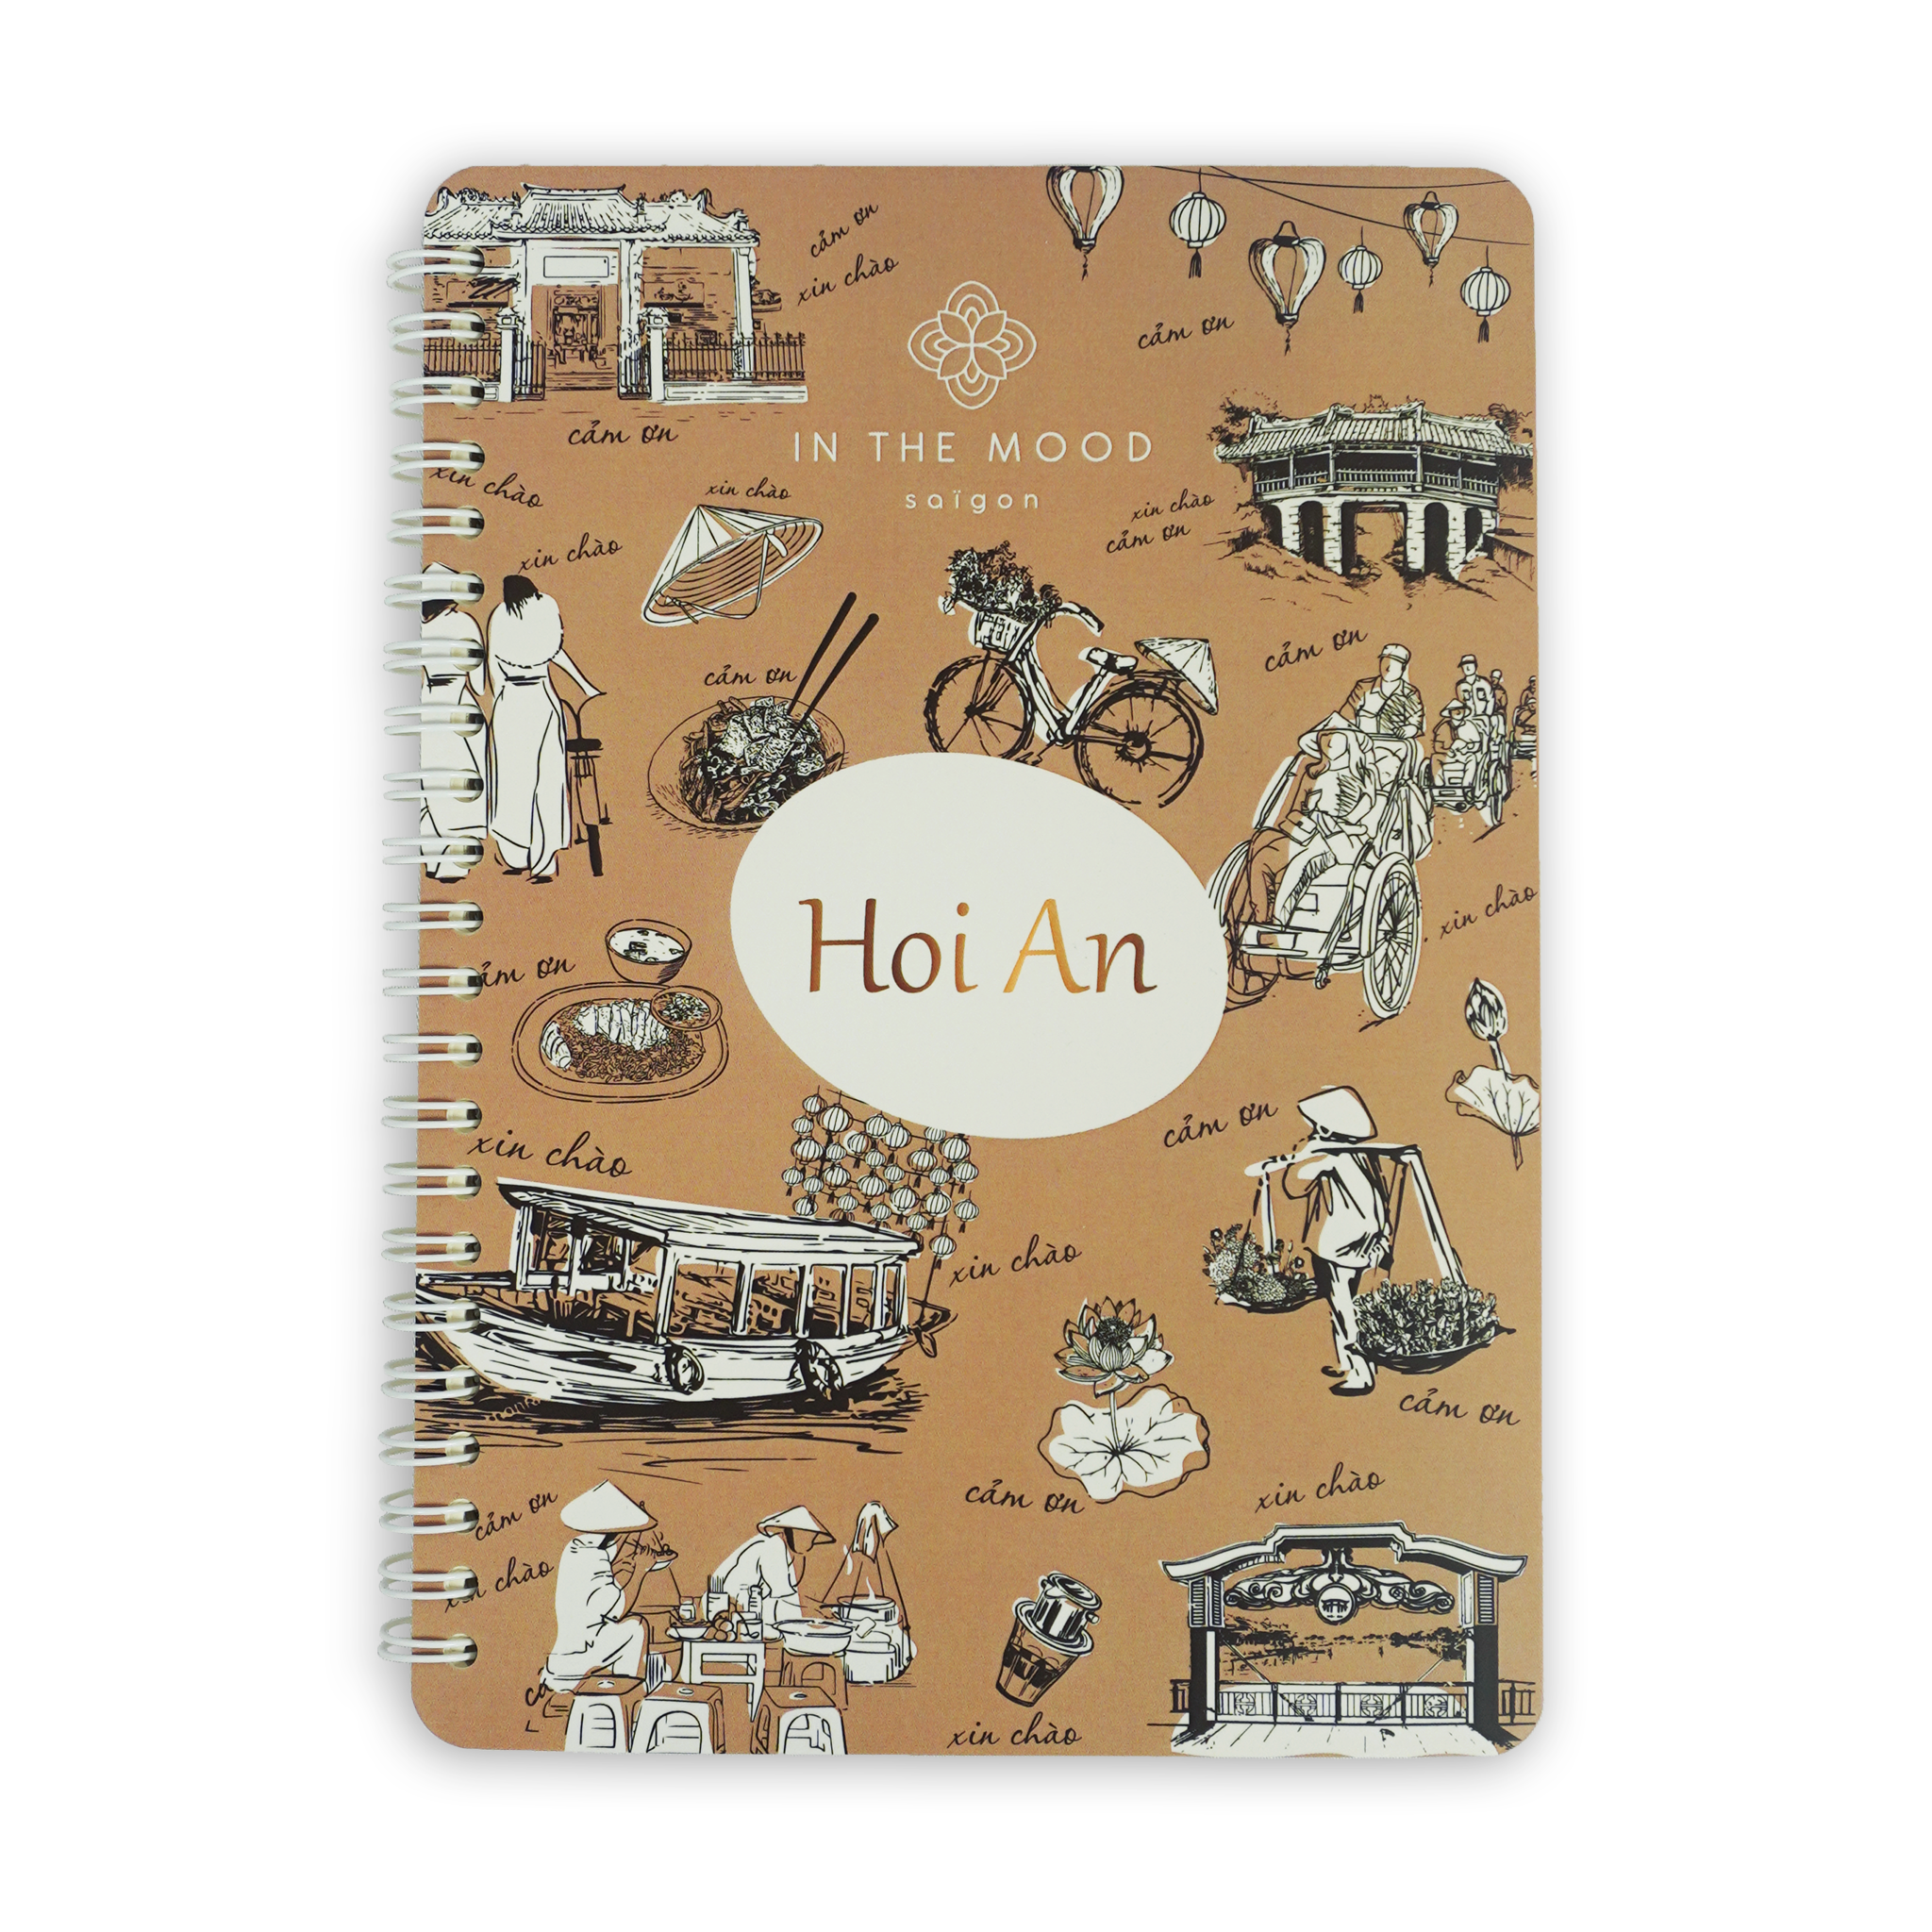  Hoi An Notebook 